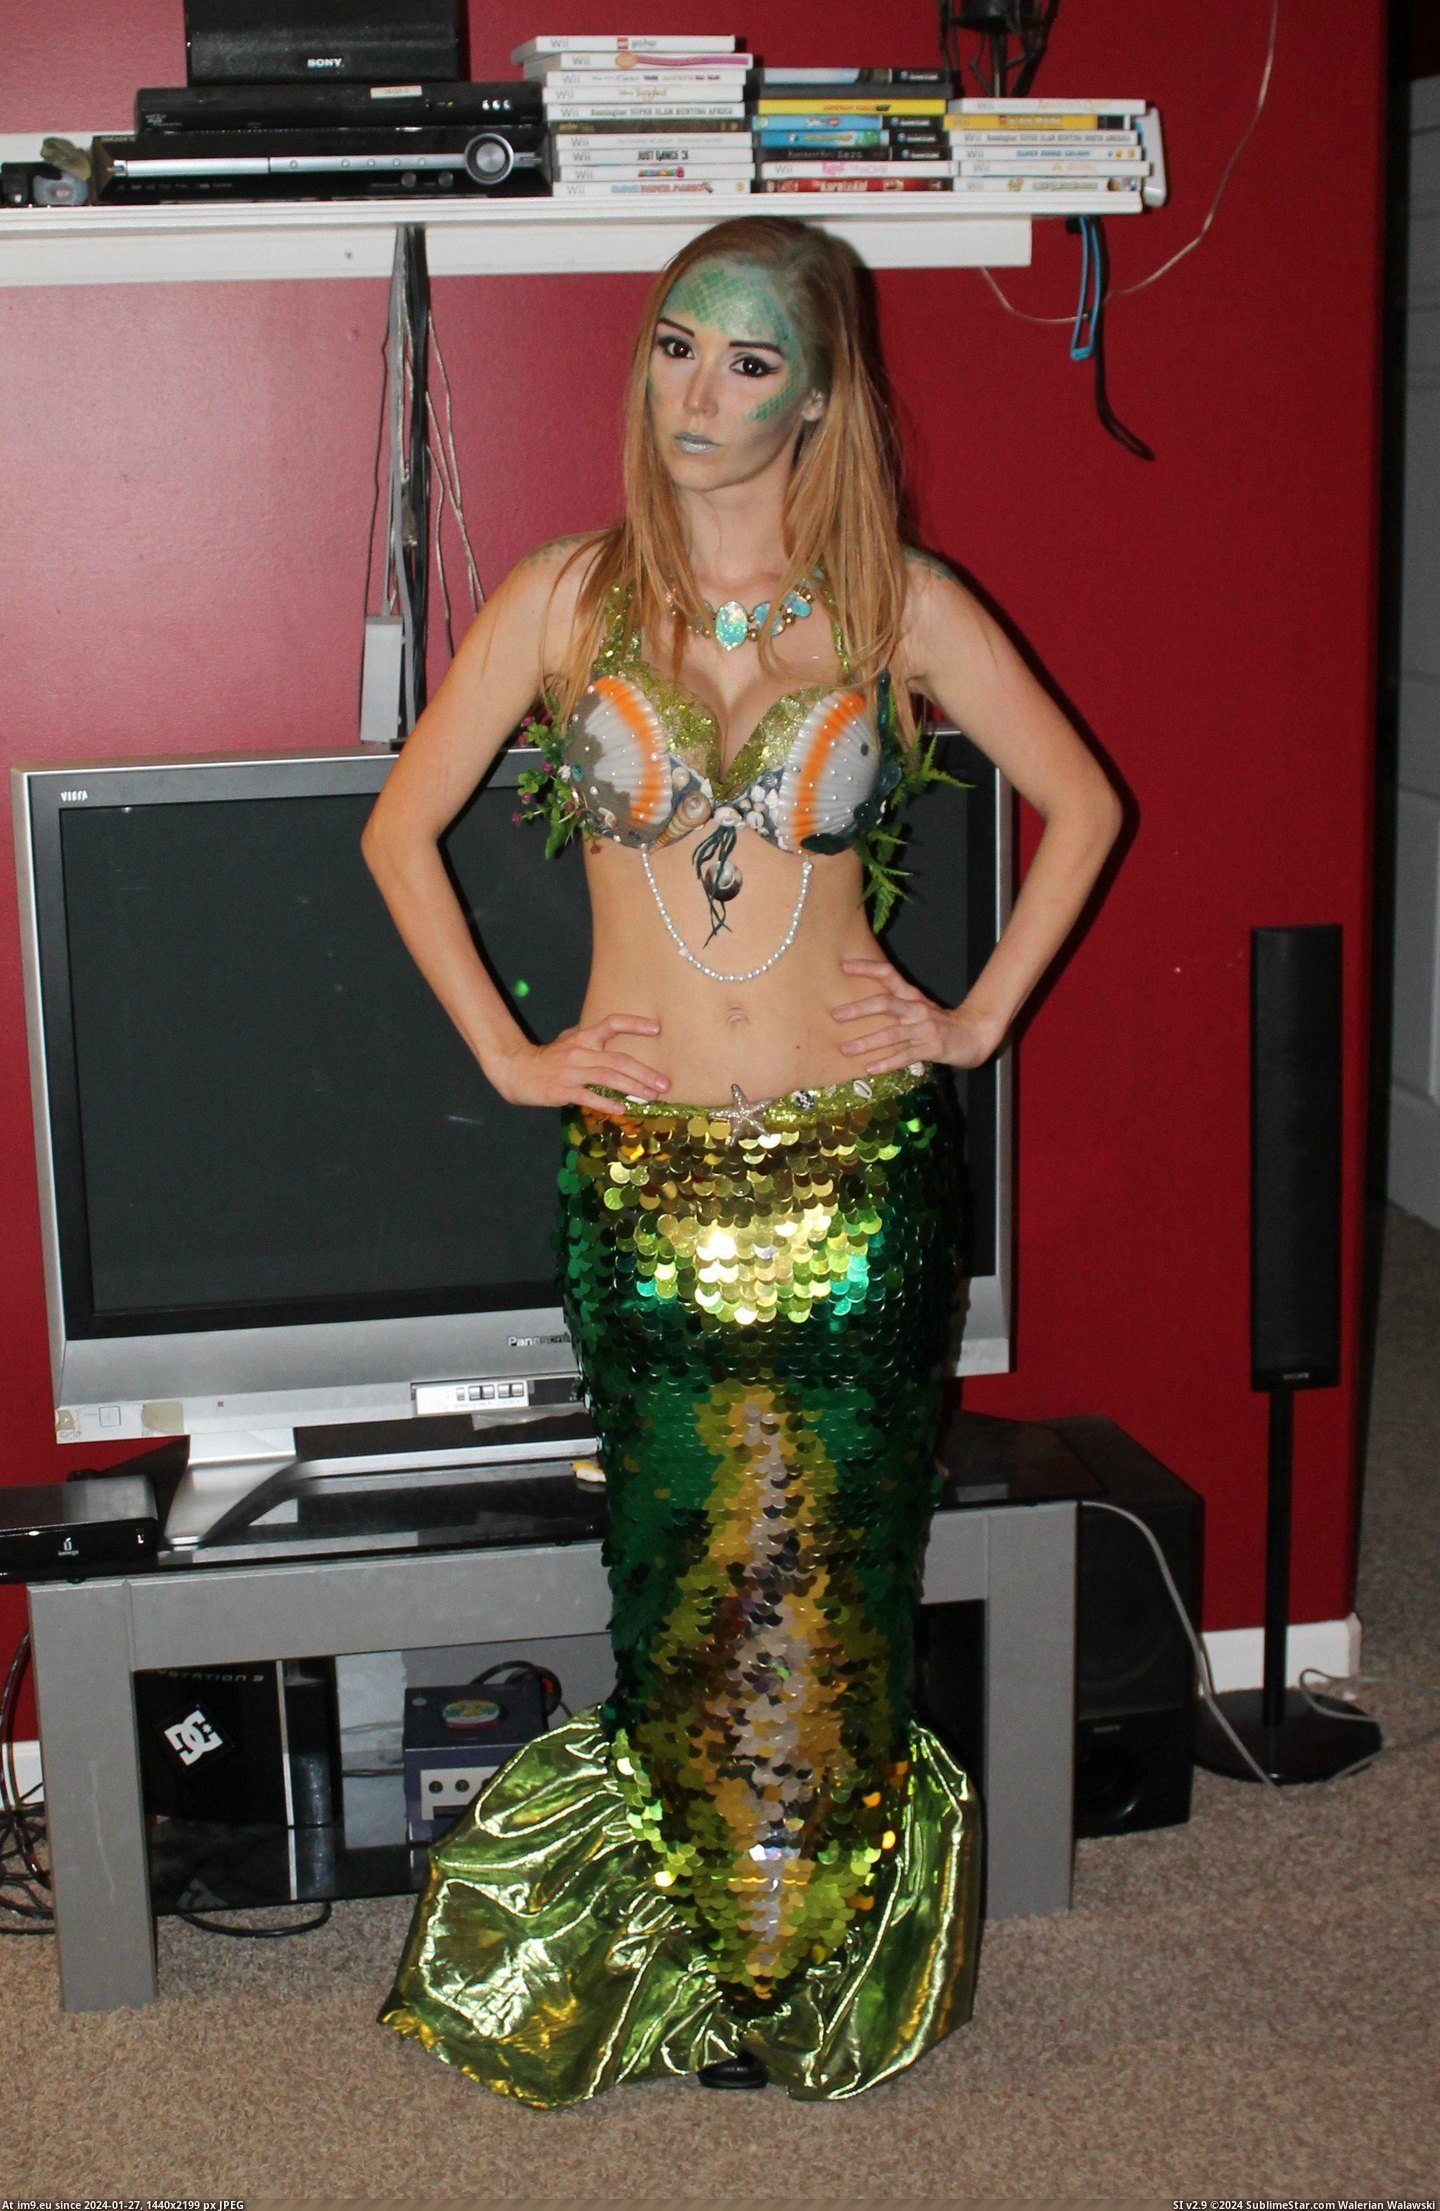 #Costume #Homemade #Mermaid [Pics] My homemade mermaid costume! 3 Pic. (Image of album My r/PICS favs))